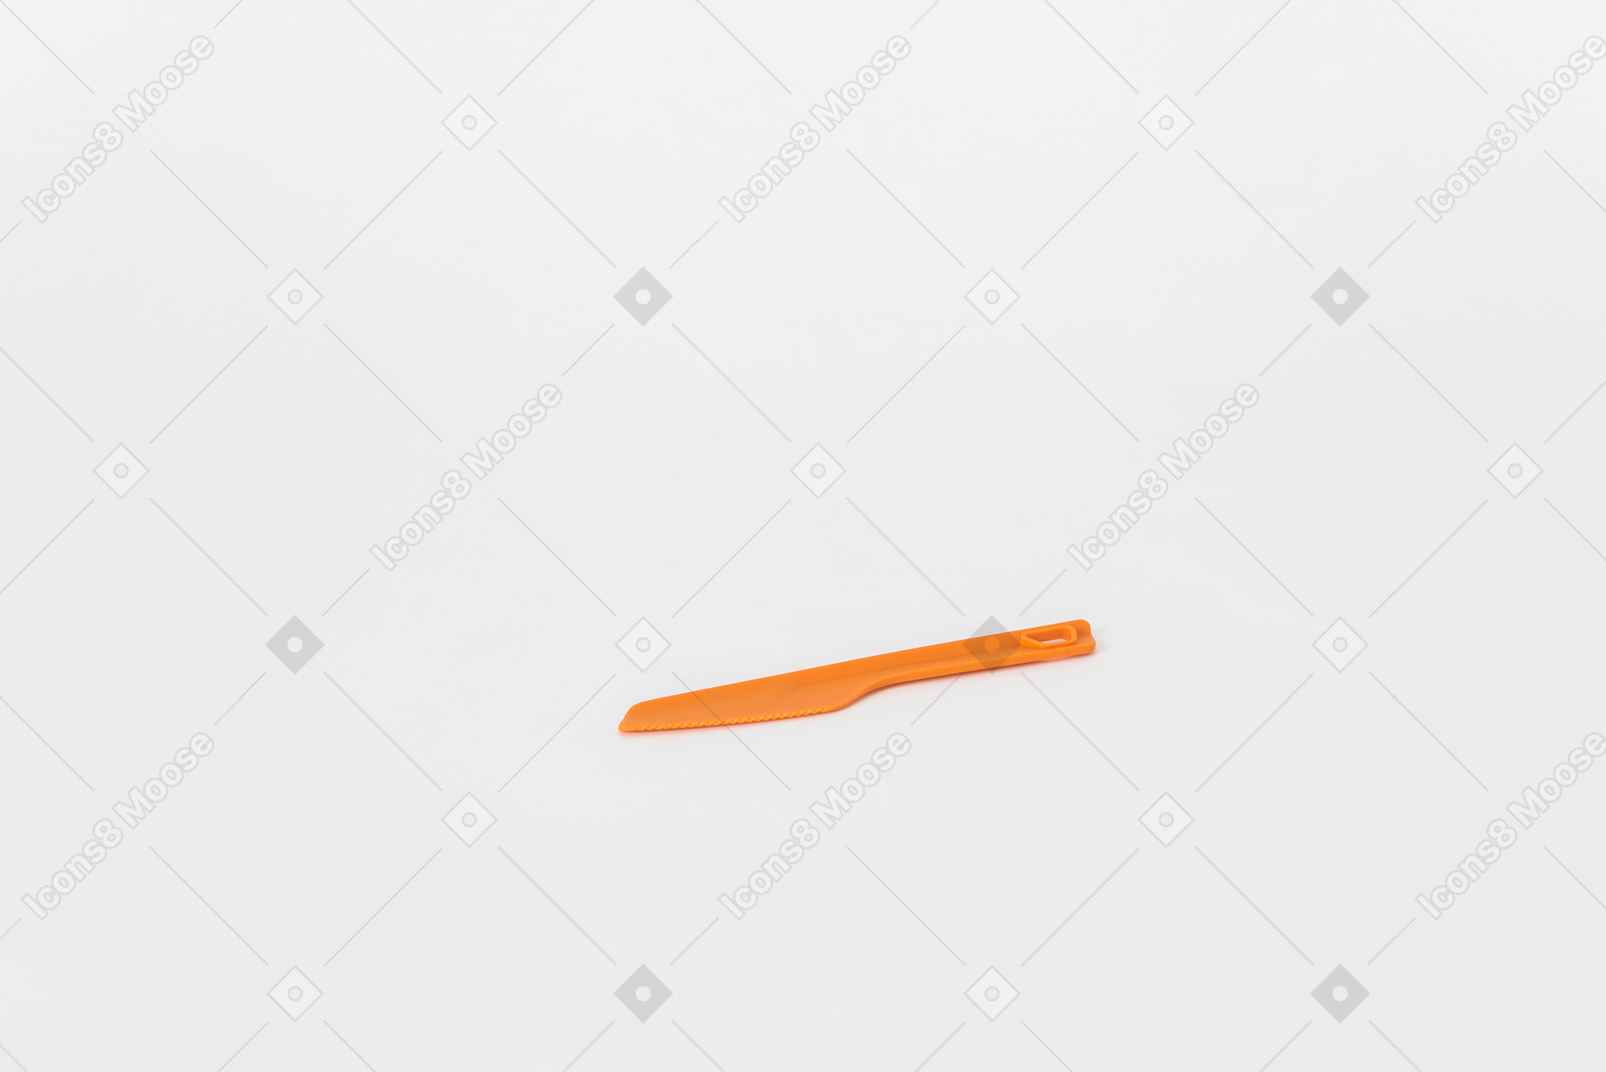 Coltello da cucina in plastica arancione su sfondo bianco